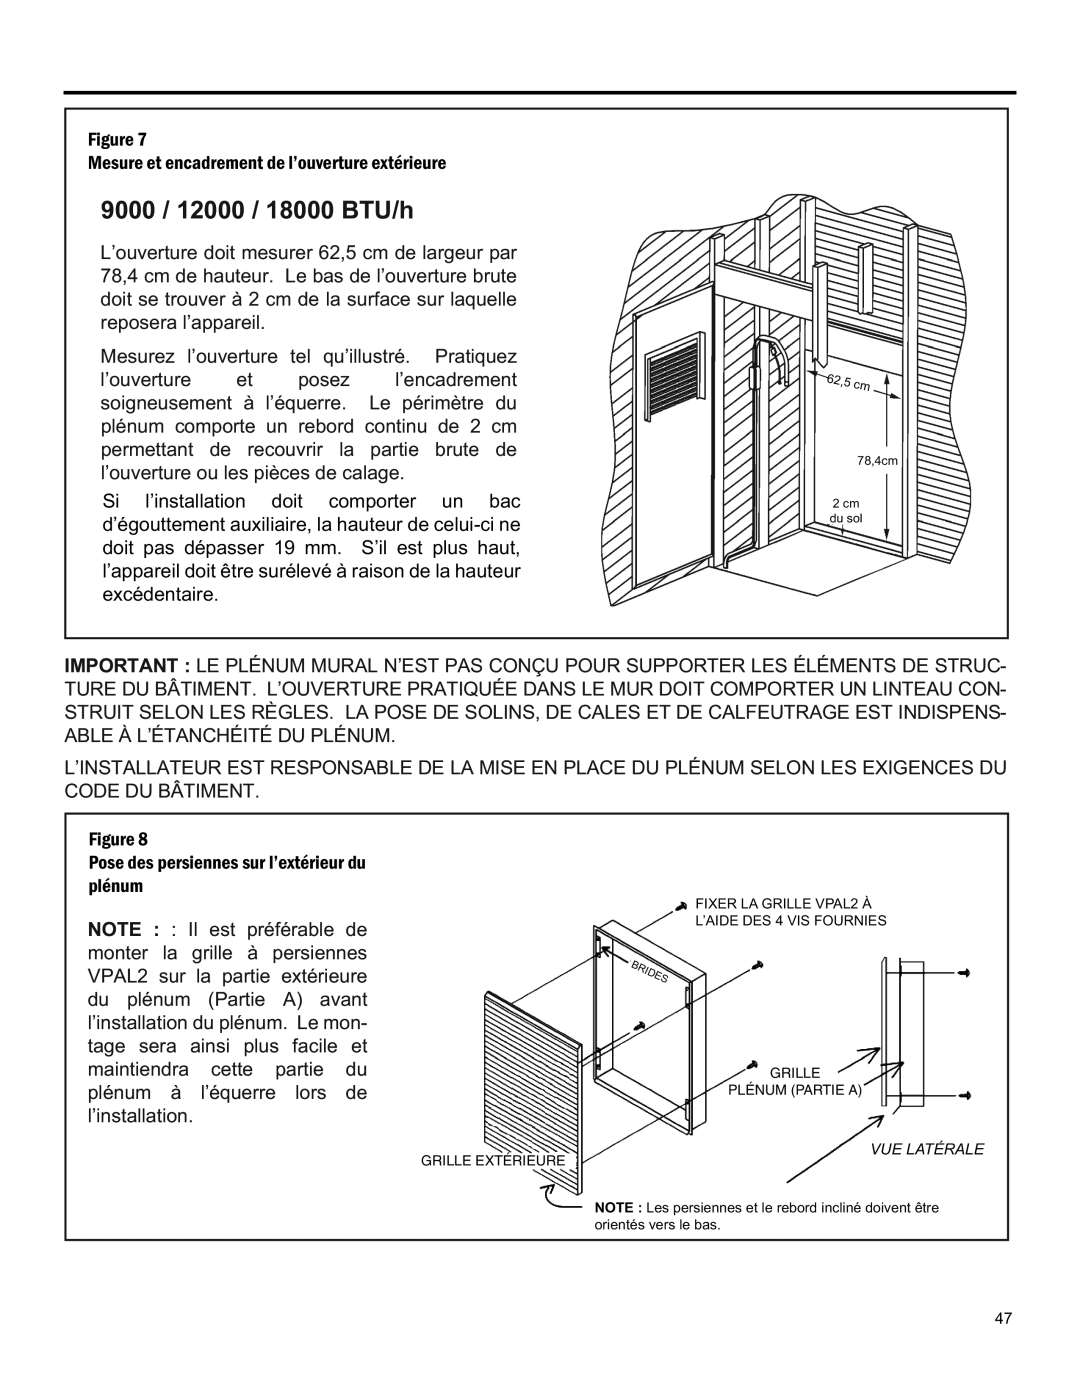 Friedrich 920-075-13 (1-11) operation manual 9000 / 12000 / 18000 BTU/h 